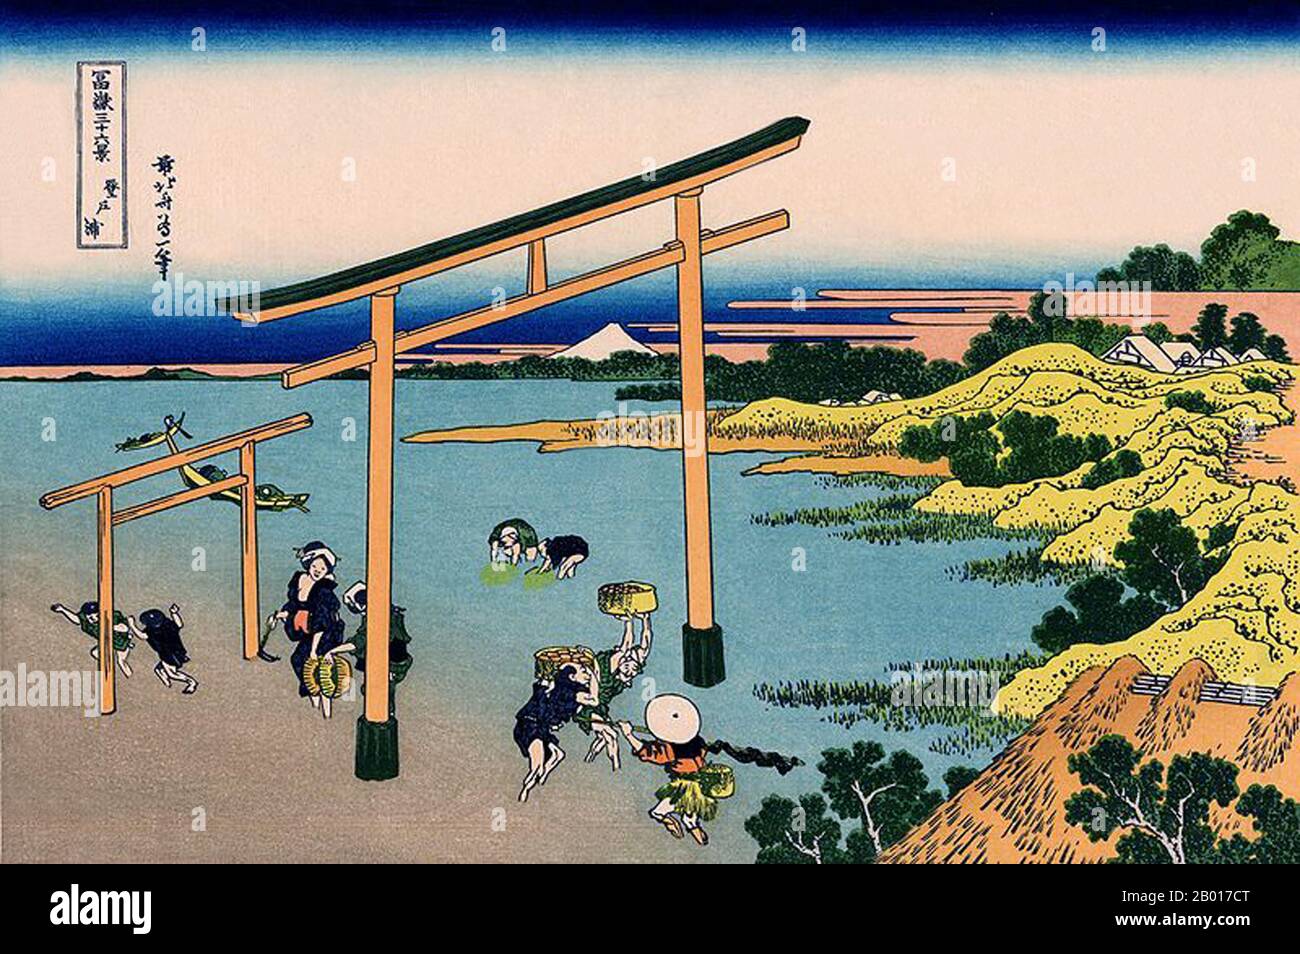 Japan: ‘Noboto Bay’. Ukiyo-e Holzschnitt aus der Serie ‘Thirty-Six views of Mount Fuji’ von Katsushika Hokusai (31. Oktober 1760 - 10. Mai 1849), 1830. ‘Thirty-Six Views of Mount Fuji’ ist eine Serie von Holzschnitten der japanischen Künstlerin Katsushika Hokusai, die „Sukiyo-e“ ‘. Die Serie zeigt den Fuji in unterschiedlichen Jahreszeiten und Wetterbedingungen an verschiedenen Orten und Entfernungen. Es besteht tatsächlich aus 46 Drucken, die zwischen 1826 und 1833 entstanden sind. Die ersten 36 wurden in die Originalpublikation aufgenommen, und aufgrund ihrer Popularität wurden nach der Originalpublikation 10 weitere hinzugefügt. Stockfoto